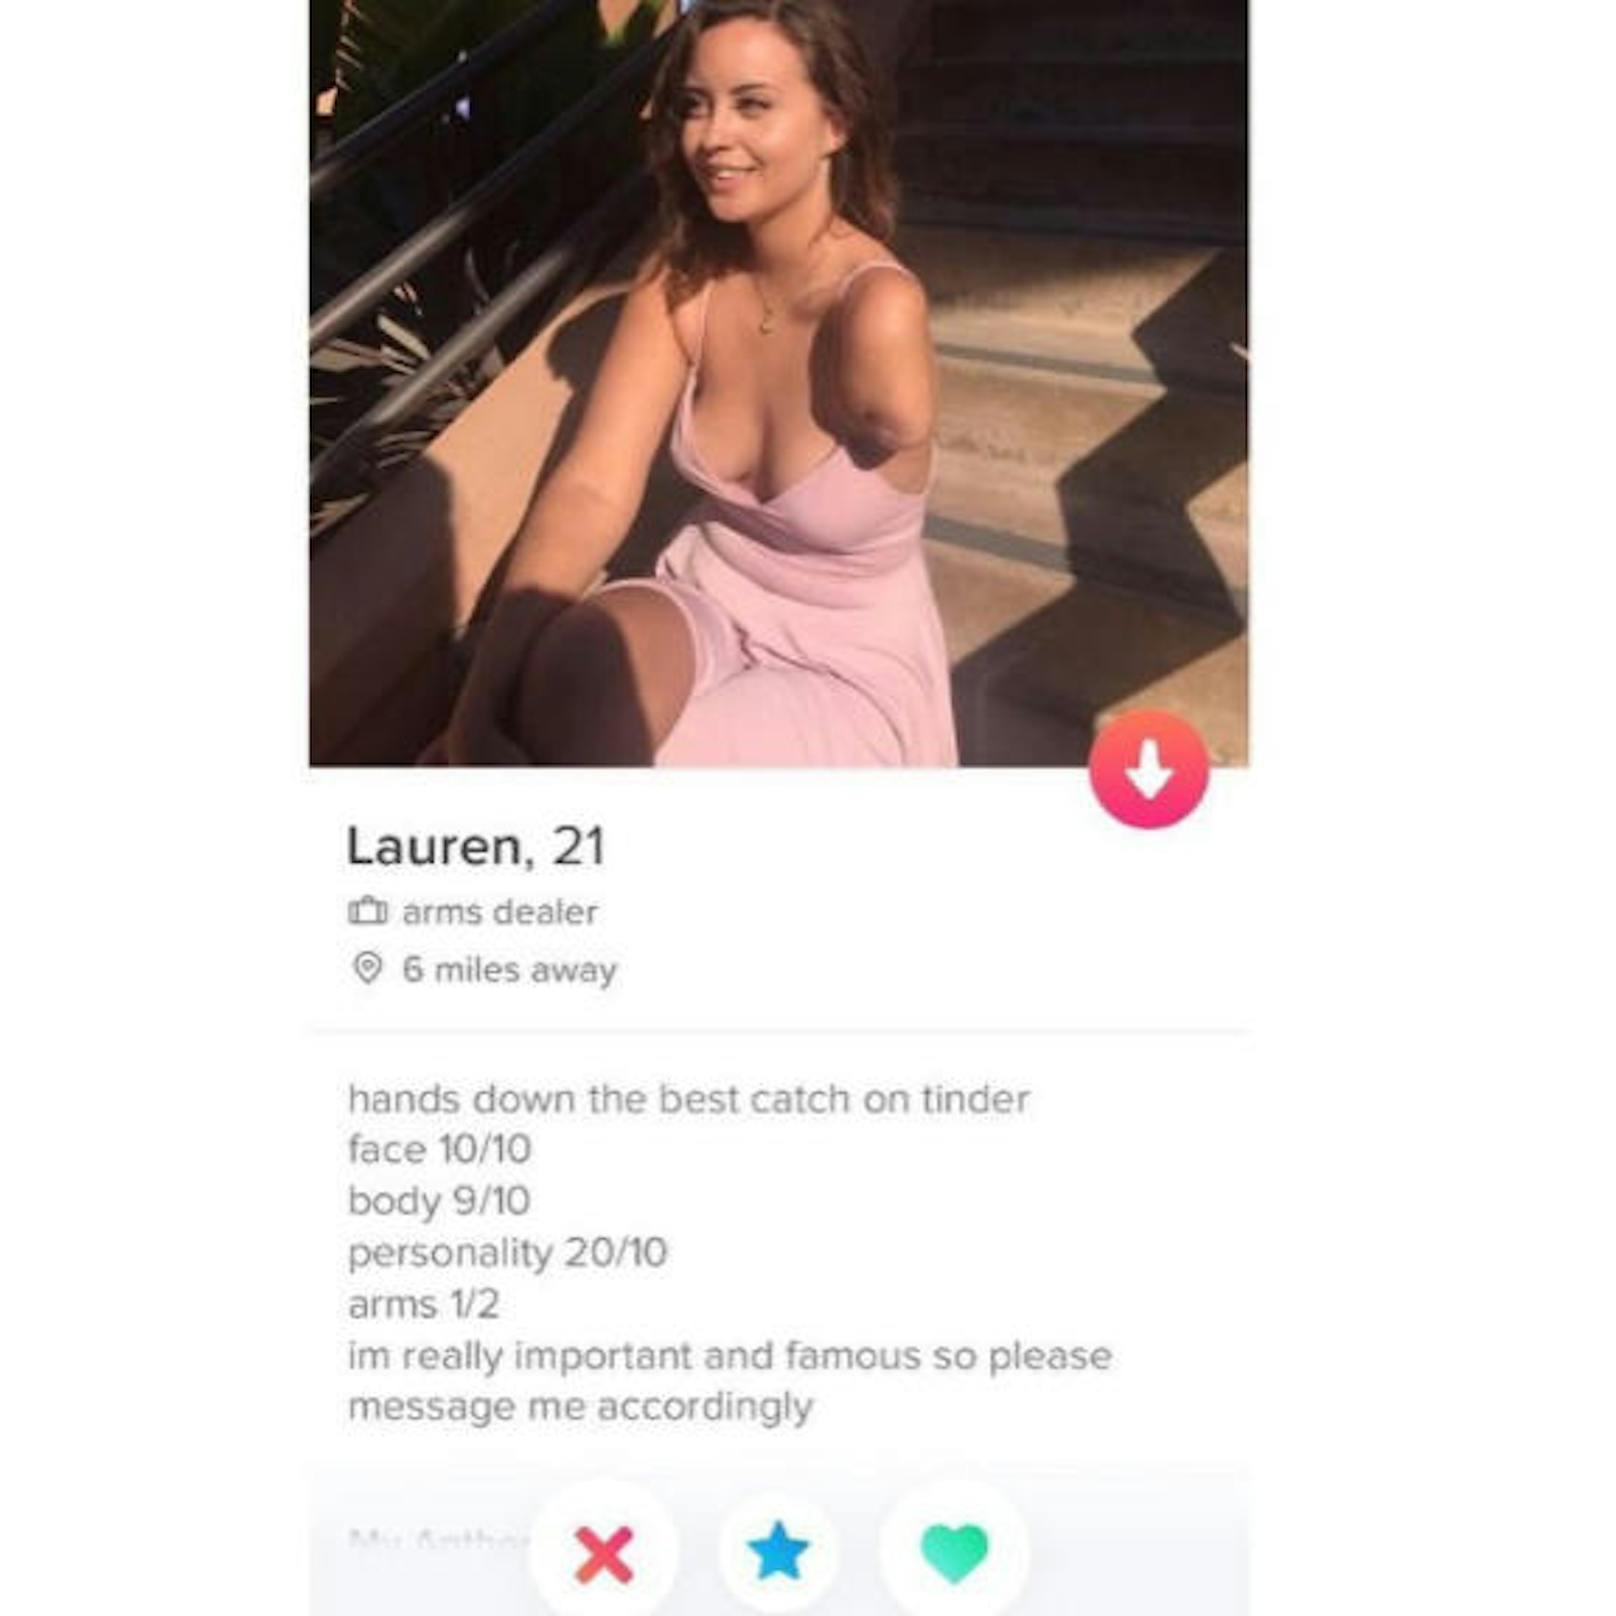 Arme 1/2, Persönlichkeit 20/10: Lauren aus San Diego macht auf einer Dating-App kein Geheimnis um ihre Behinderung. Selbstbewusst bezeichnet sie sich frei übersetzt als "mit links der beste Fang auf Tinder".